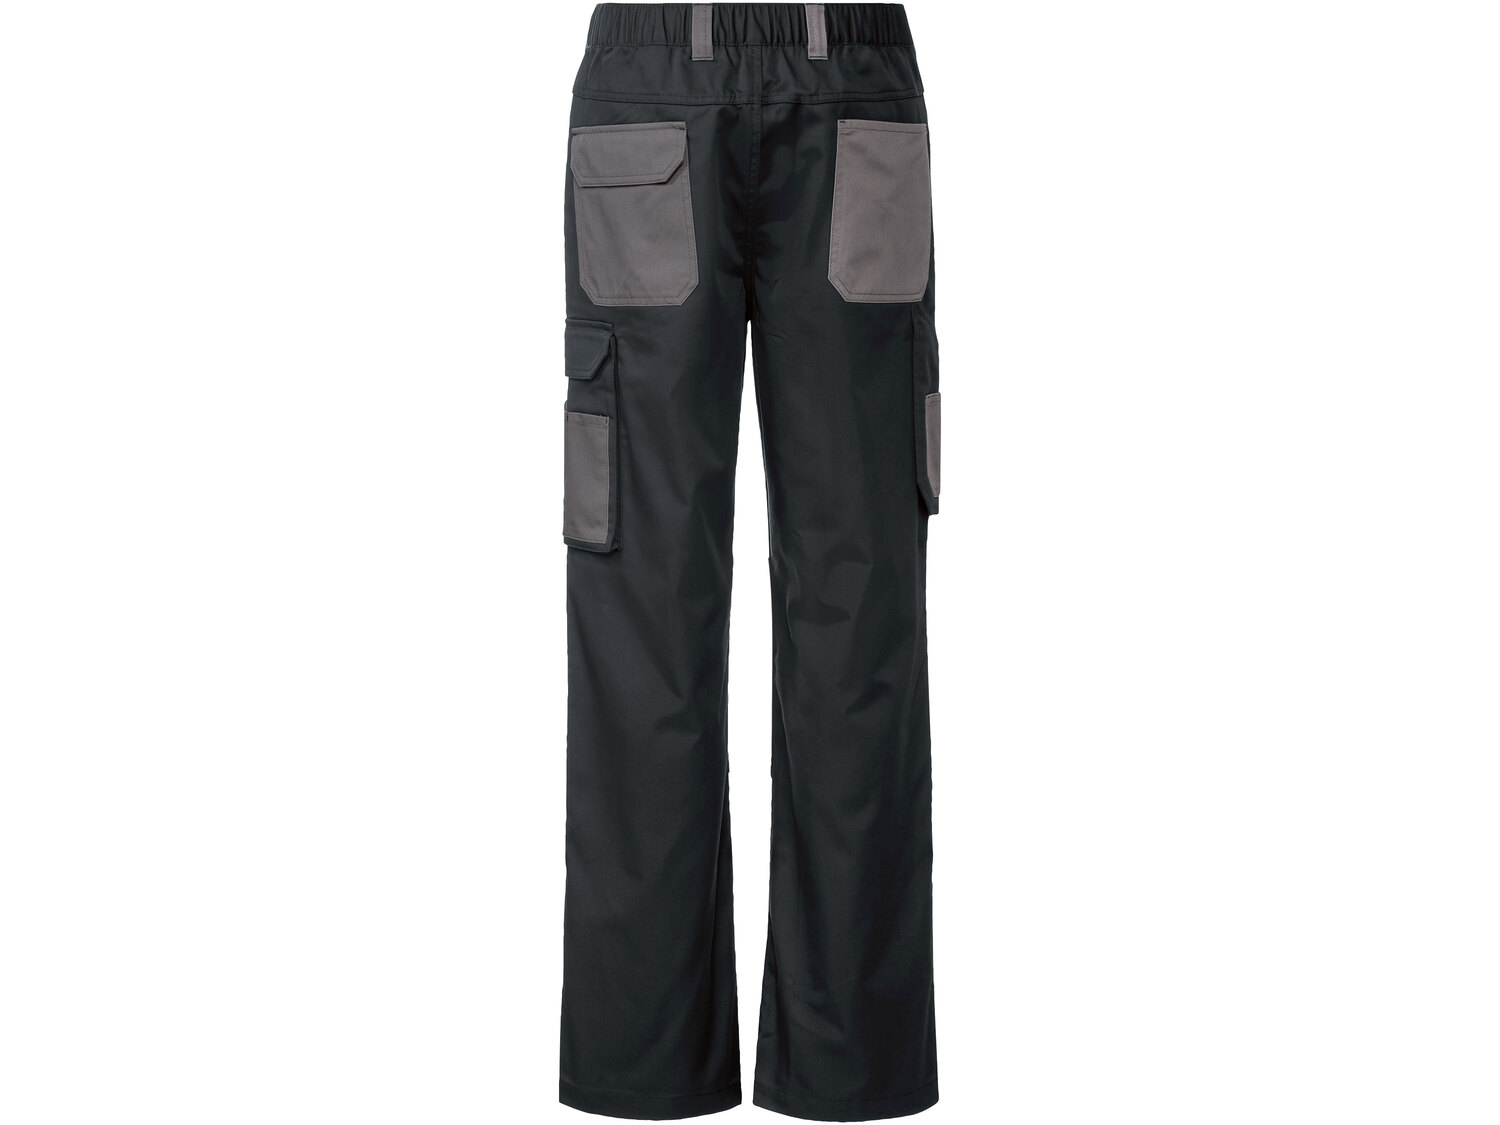 Spodnie robocze męskie , cena 54,90 PLN 
- rozmiary: 48-56
- wzmocnienie na wysokości ...